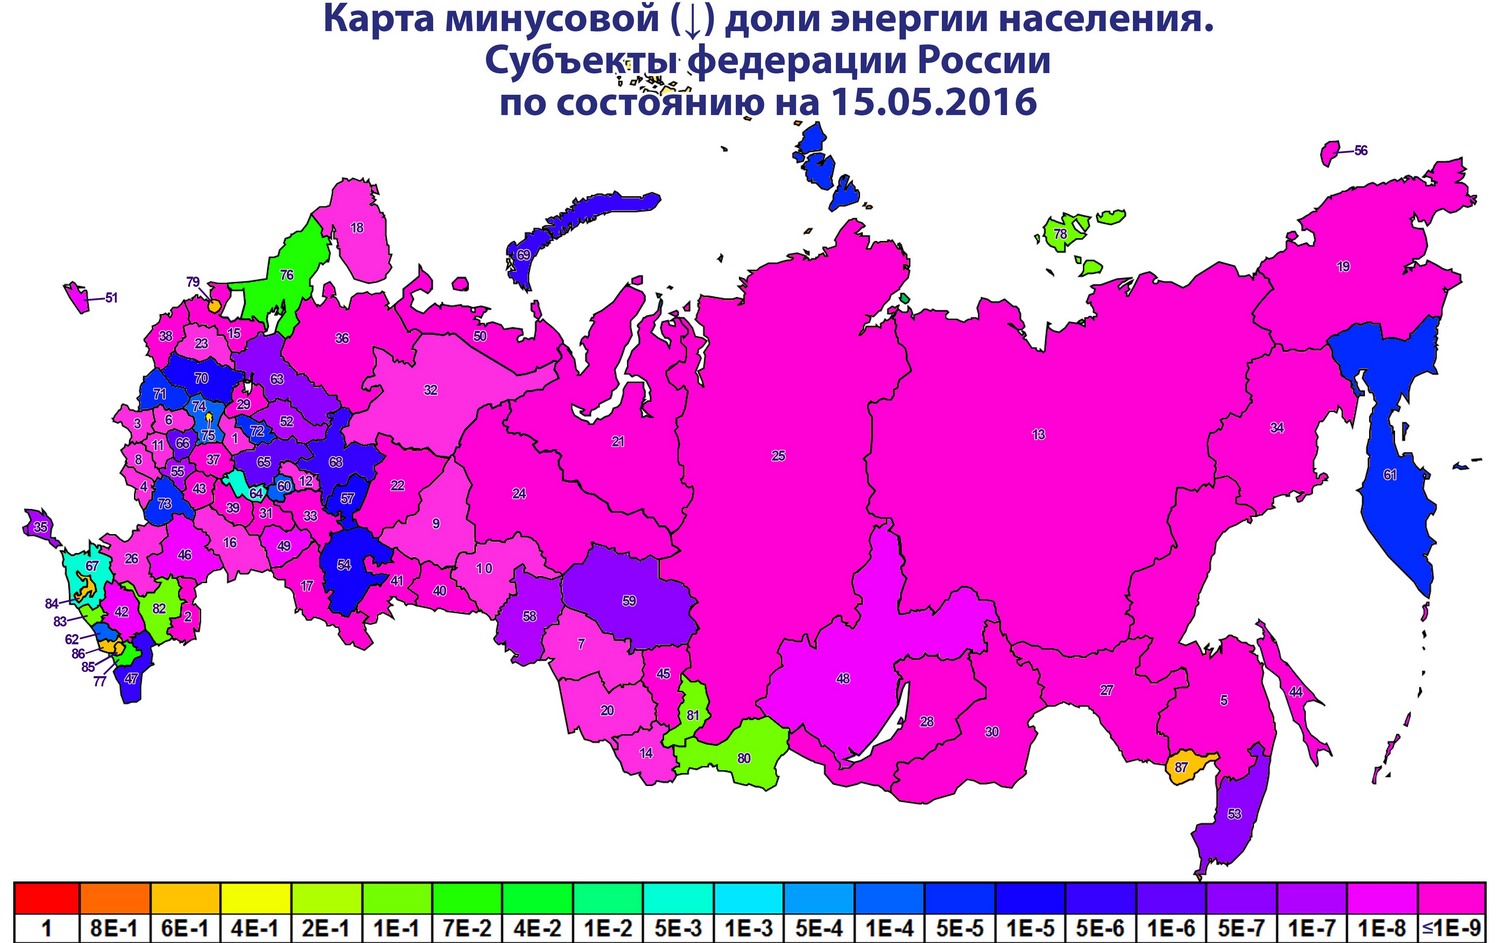 Россия население минусовое на 15.05.2016